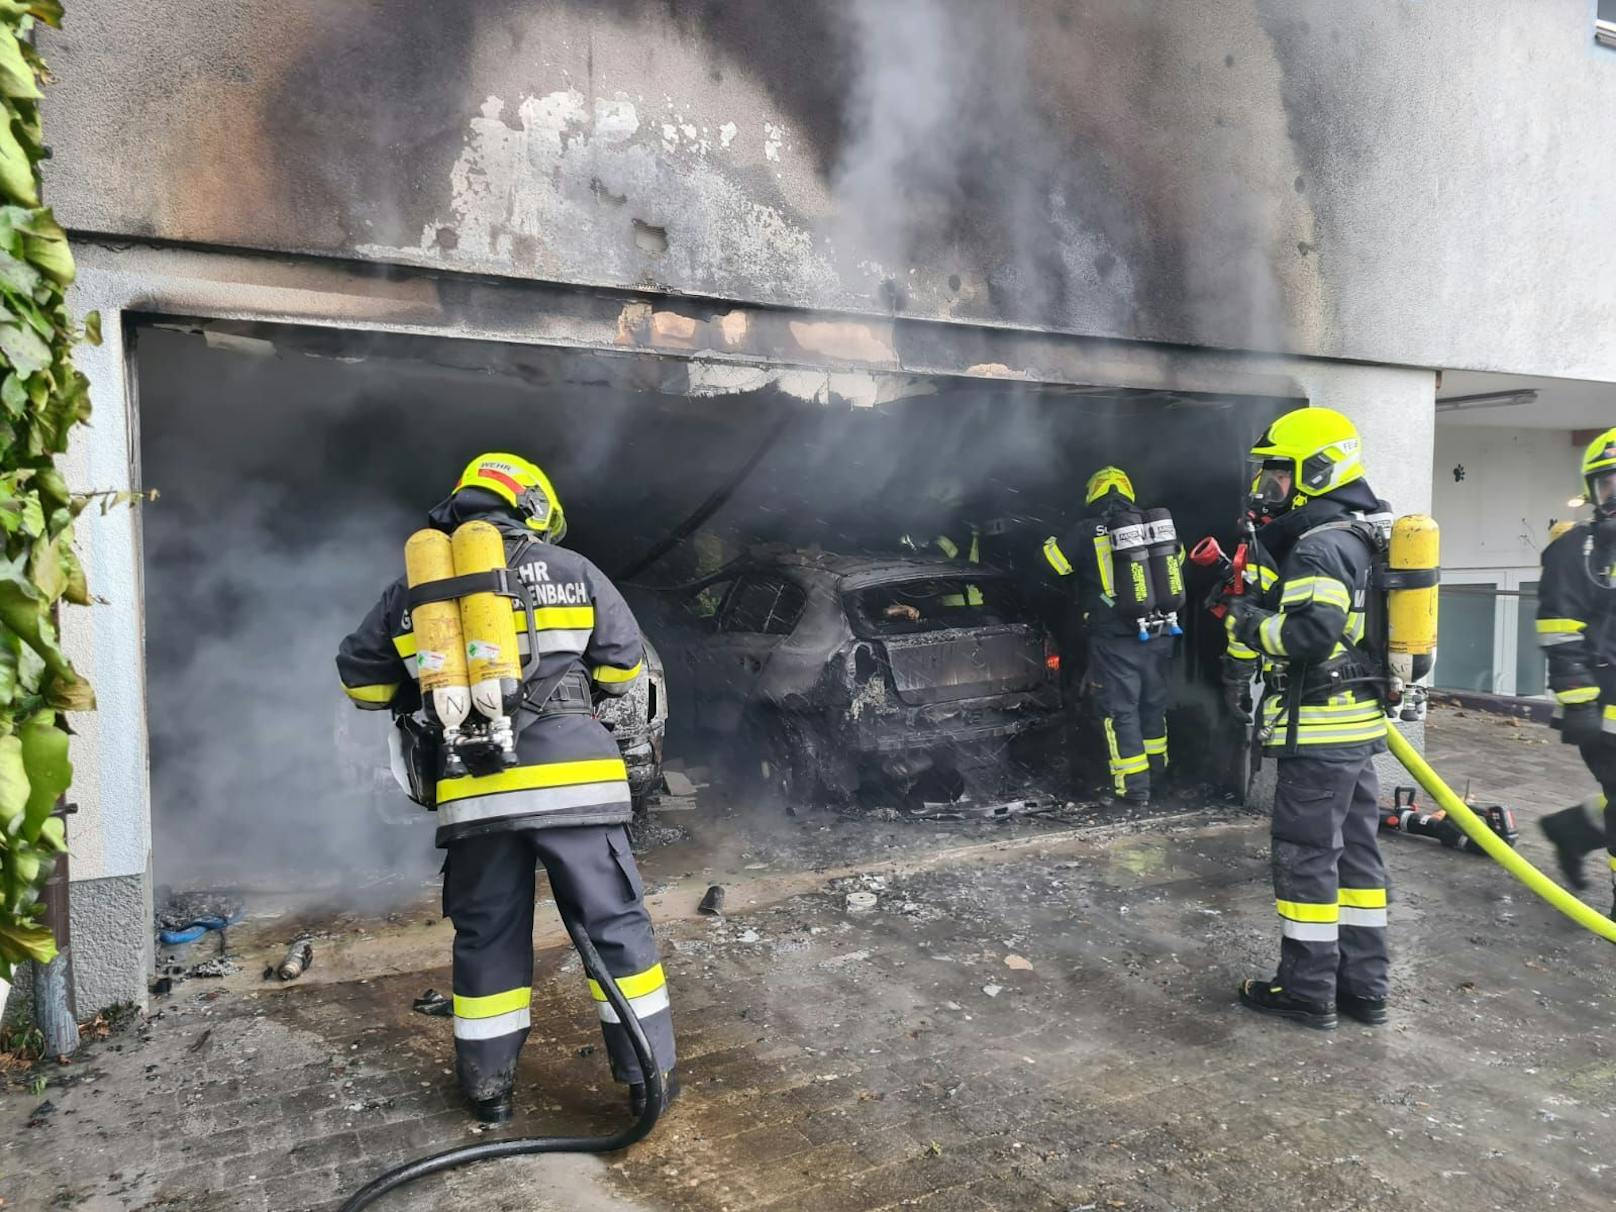 Wohnhausbrand in Gloggnitz: Ein Feuerwehrmann bei Einsatz verletzt